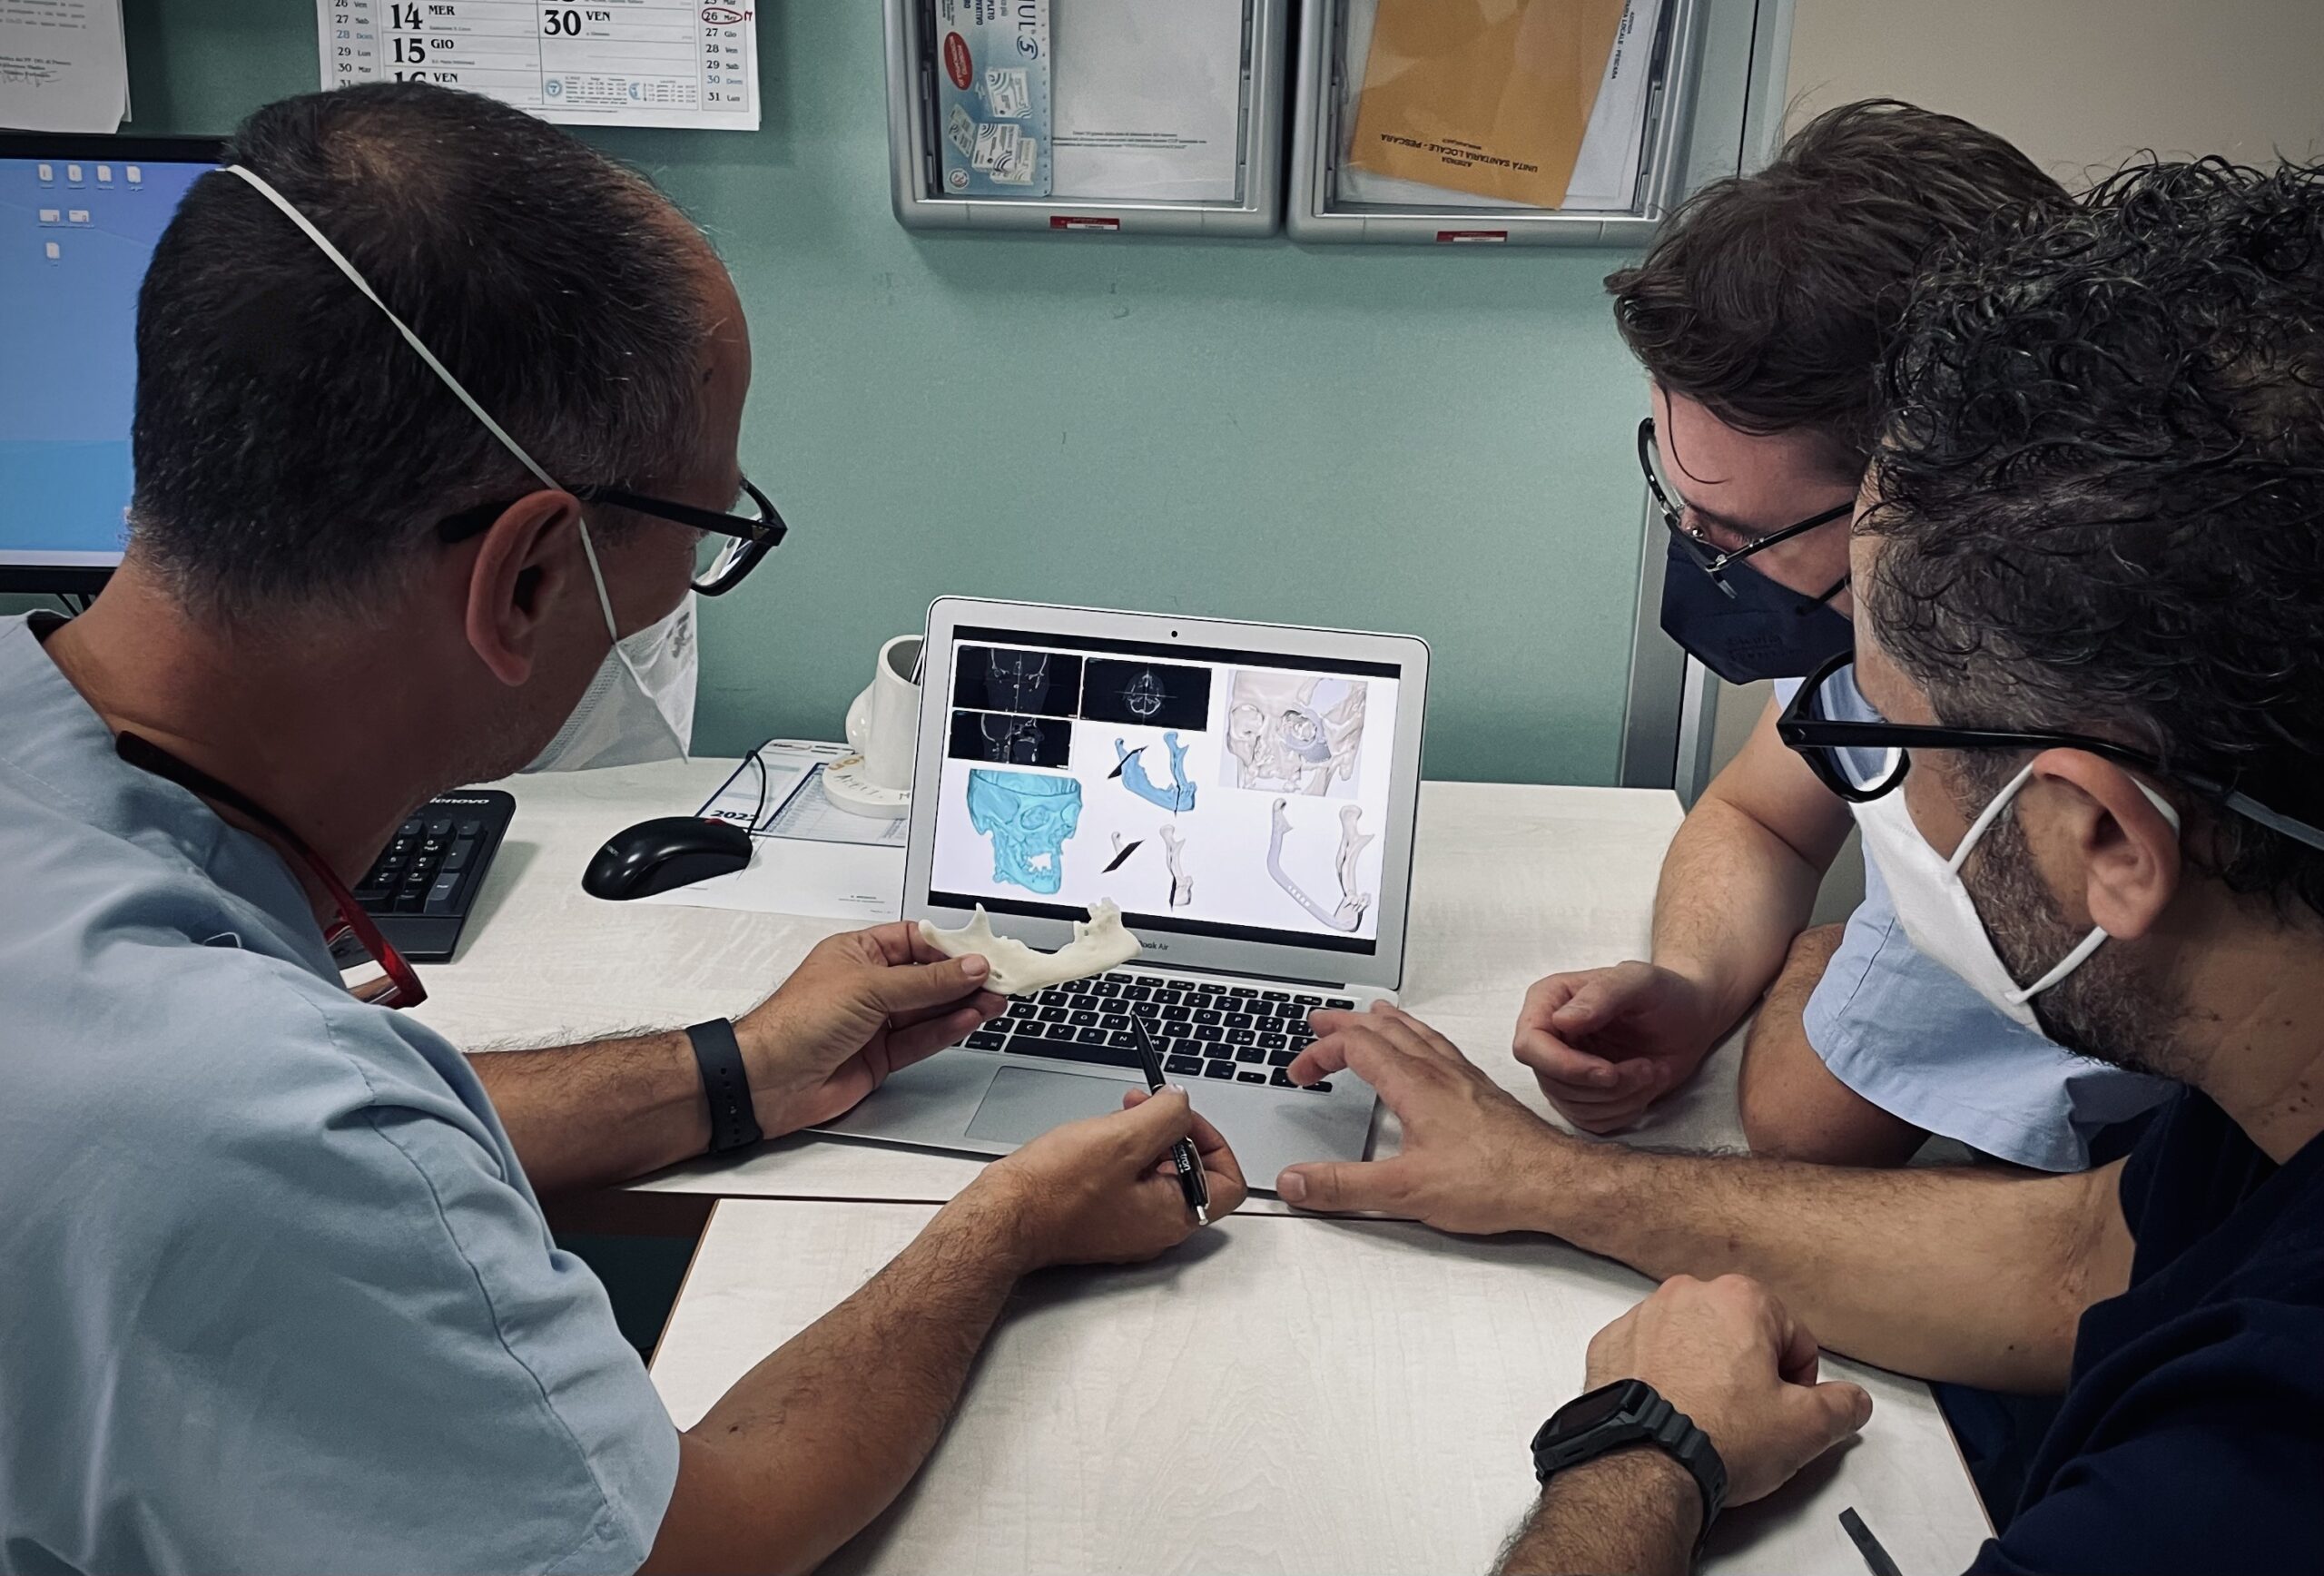 Interventi chirurgici di ricostruzione maxillo facciale innovativi eseguiti alla Asl di Pescara